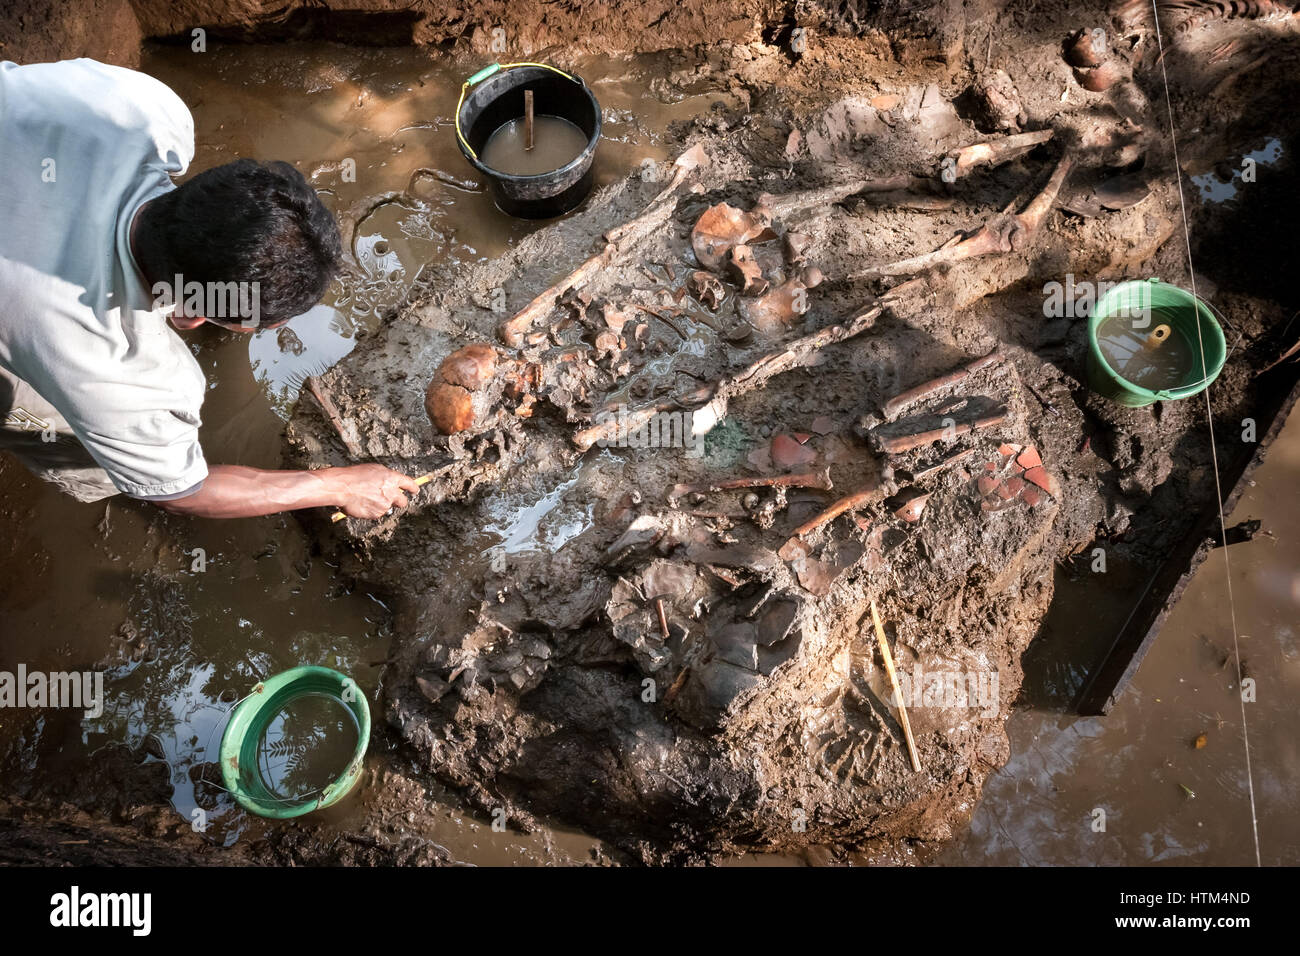 Ein Mann reinigt freiliegende prähistorische menschliche Knochen und Schädel während der Ausgrabung einer prähistorischen Grabstätte in Tempuran, Karawang, West-Java, Indonesien. Stockfoto